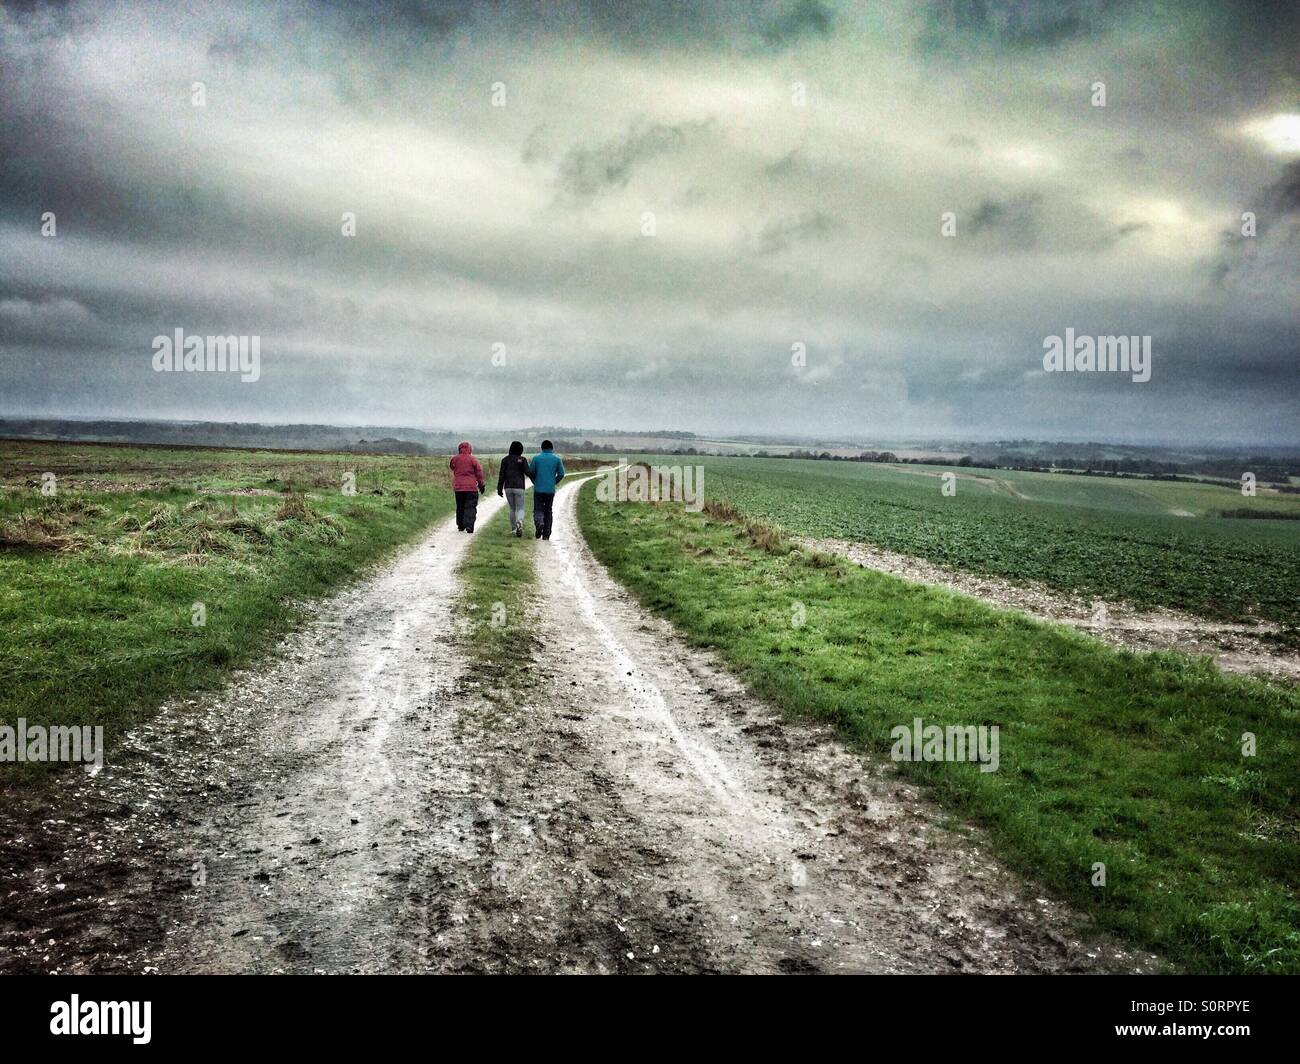 Reise von Frauen zu Fuß auf eine kalte nasse trostlose englische Landschaft im winter Stockfoto